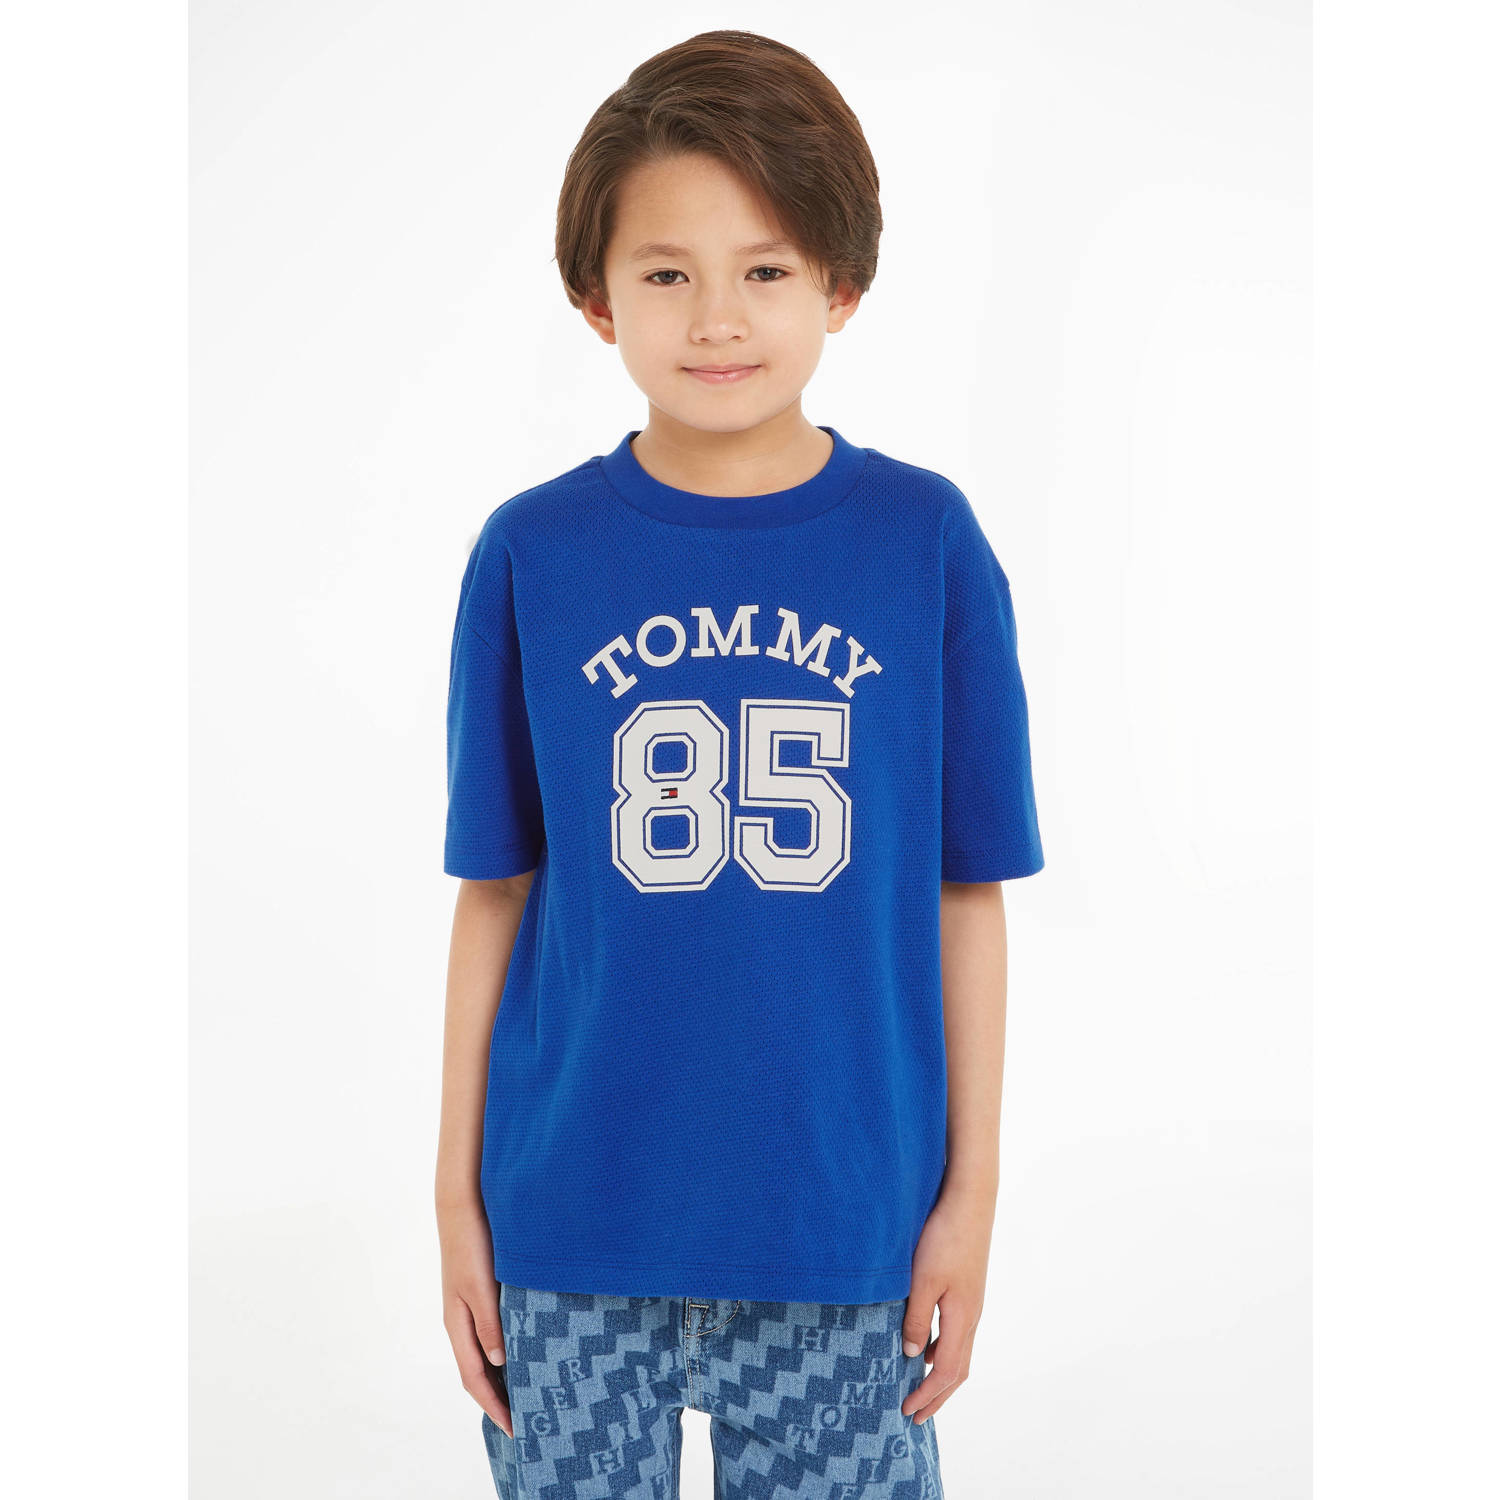 Tommy Hilfiger T-shirt met tekst helderblauw wit